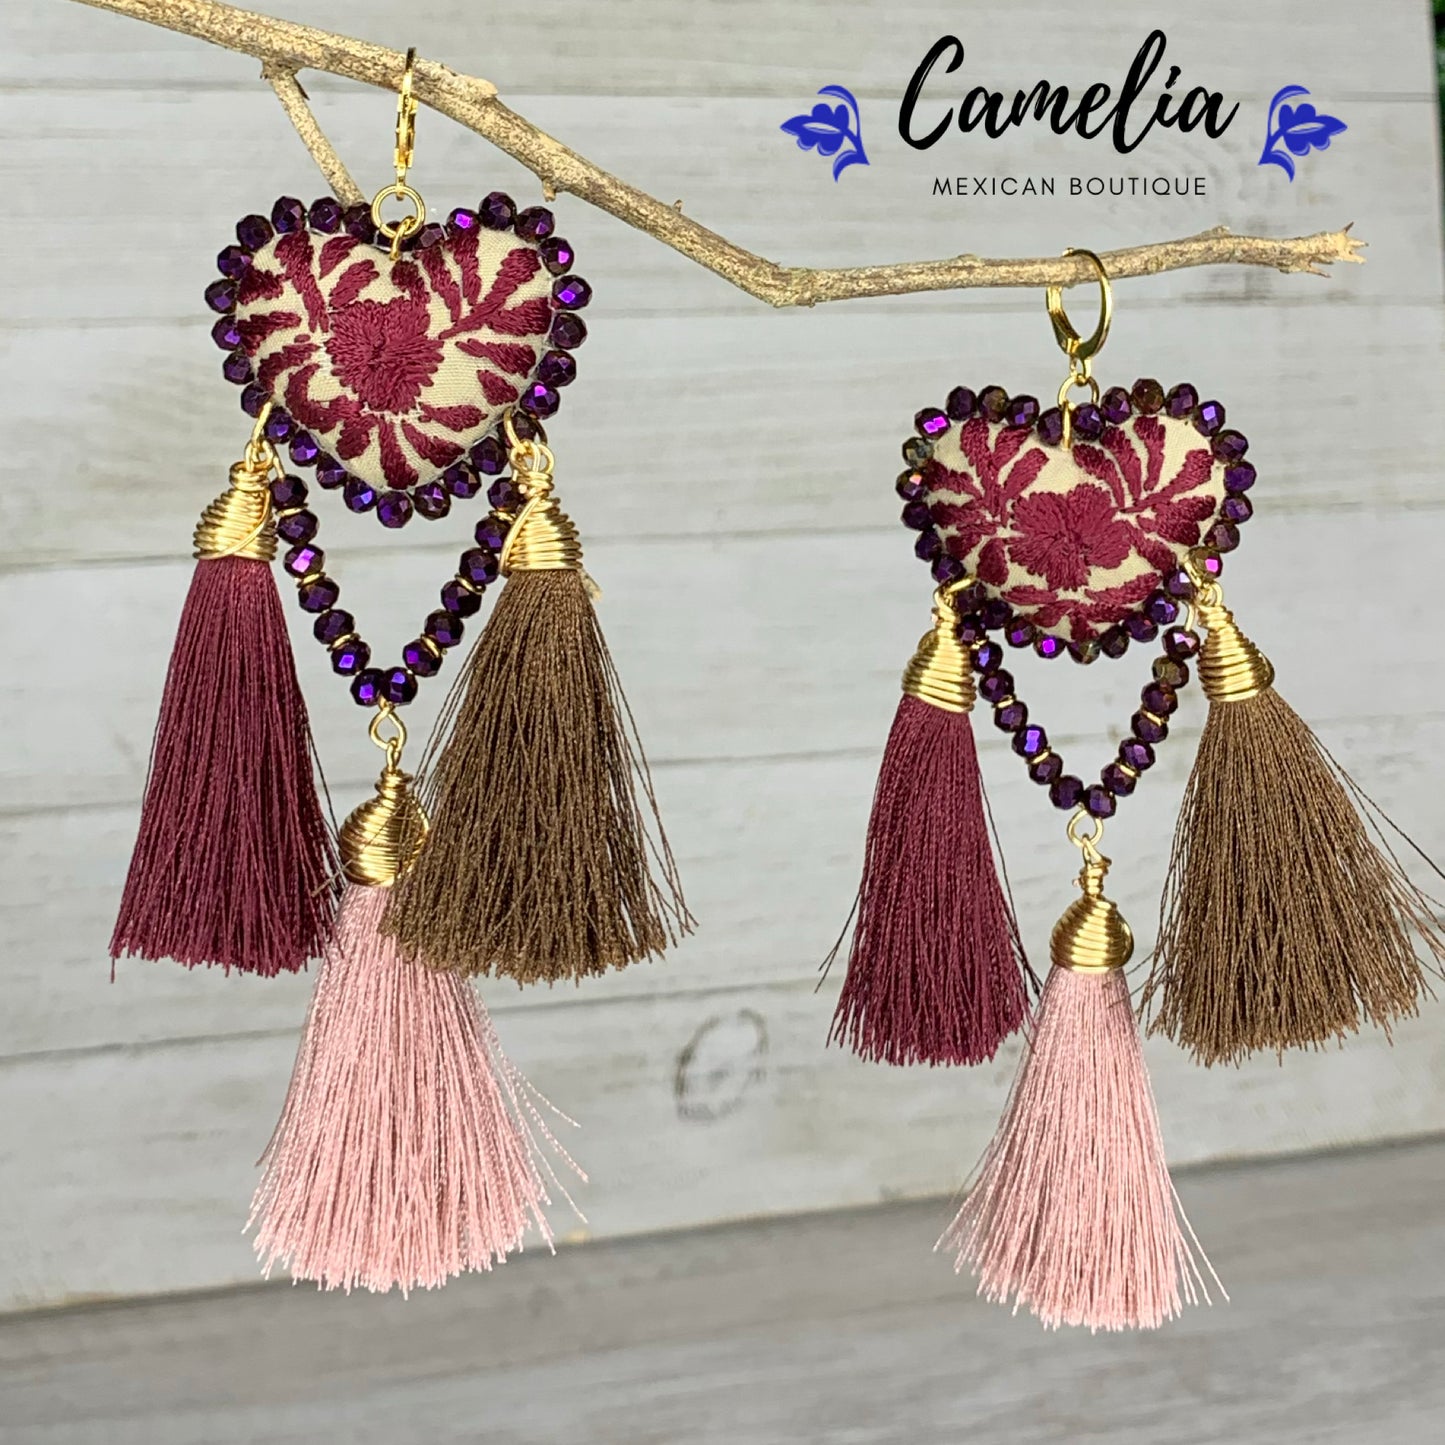 San Antonino Embroidered Heart Tasseled Earrings - Plum